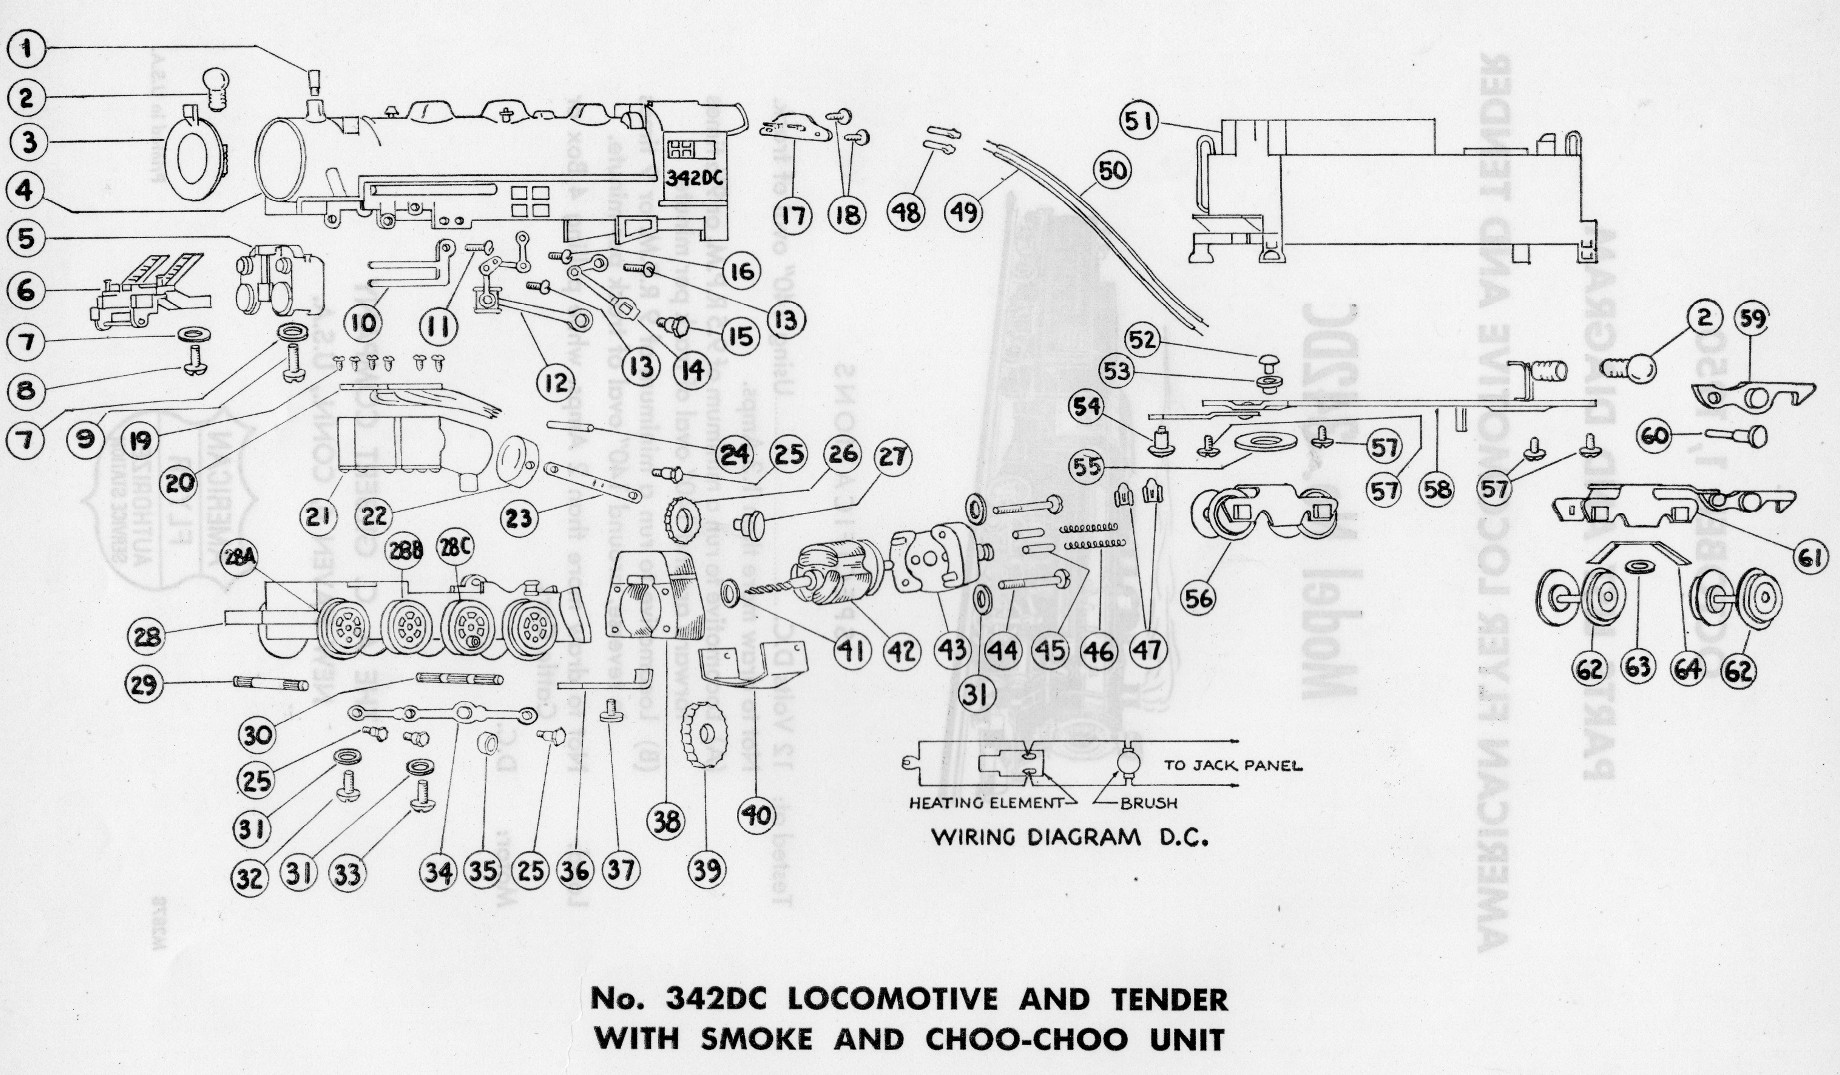 American Flyer Locomotive 342DC Parts List & Diagram - Page 2